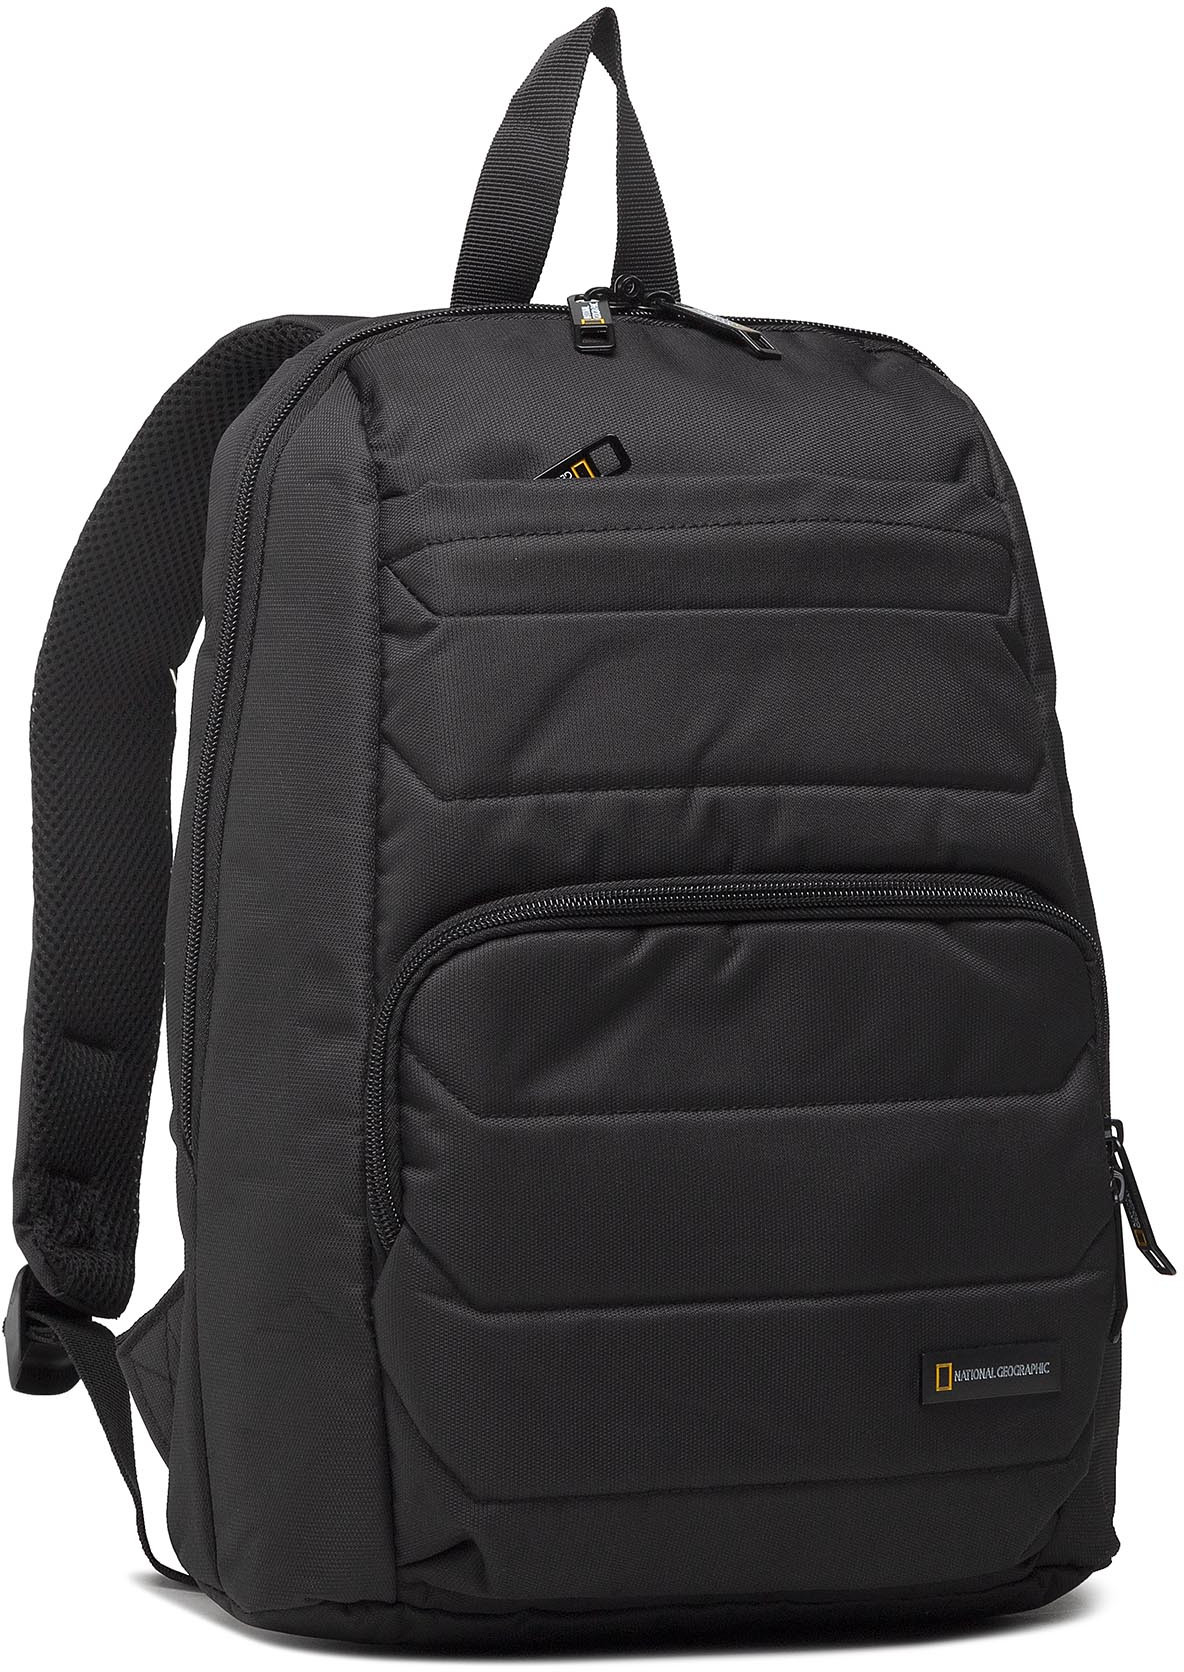 National Geographic Plecak Female Backpack N00720 Black